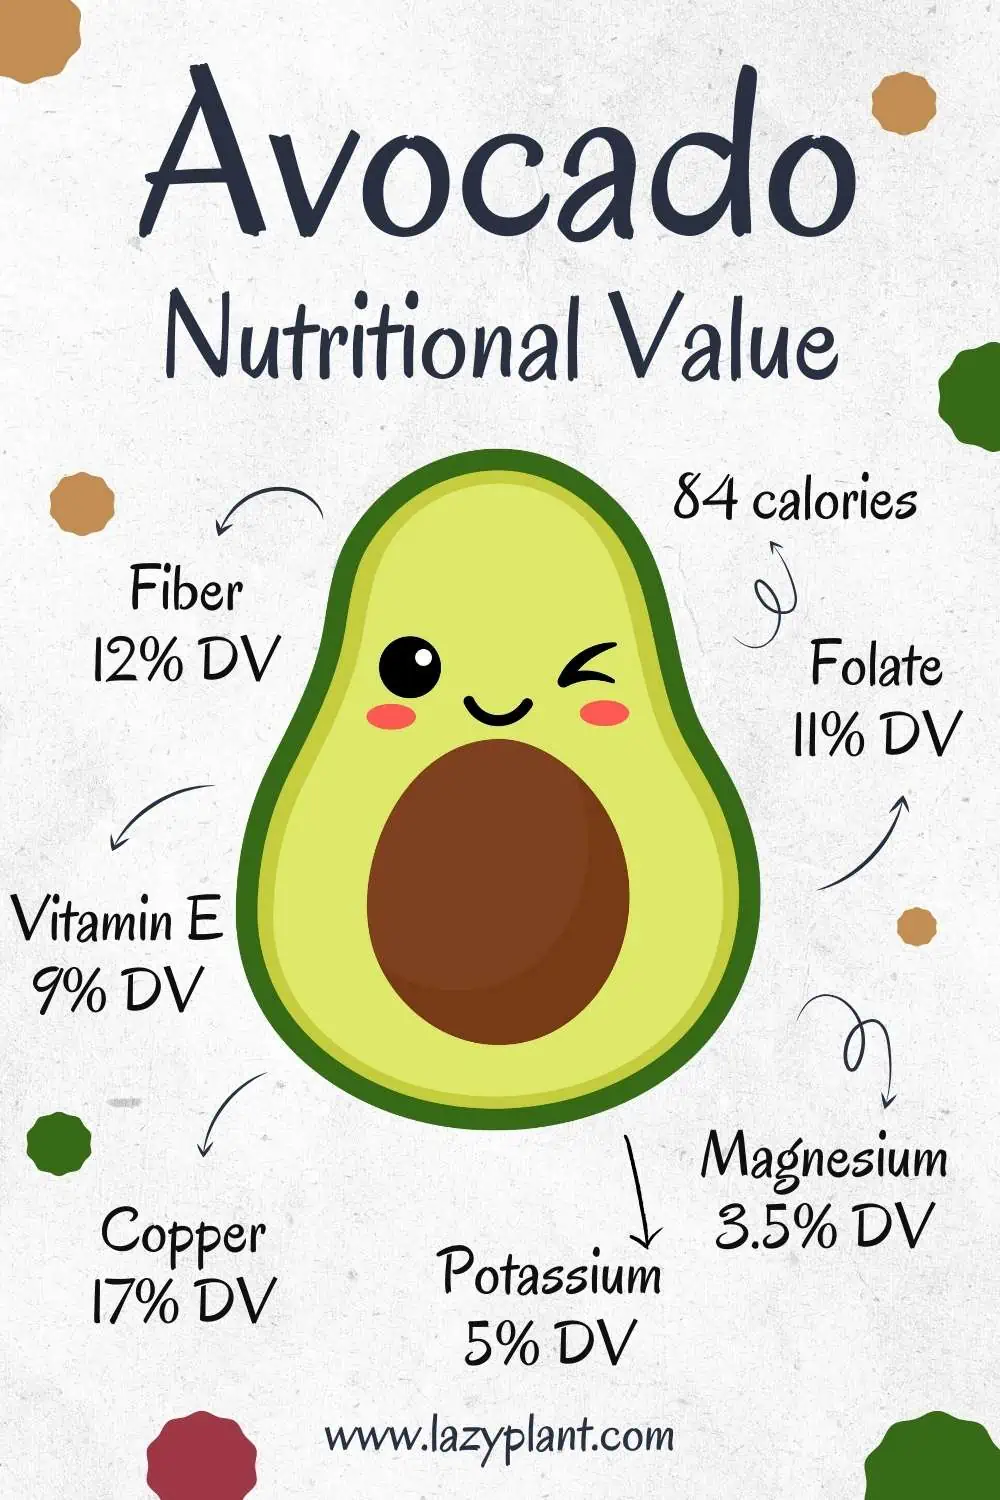 Nutritional Value of Avocado